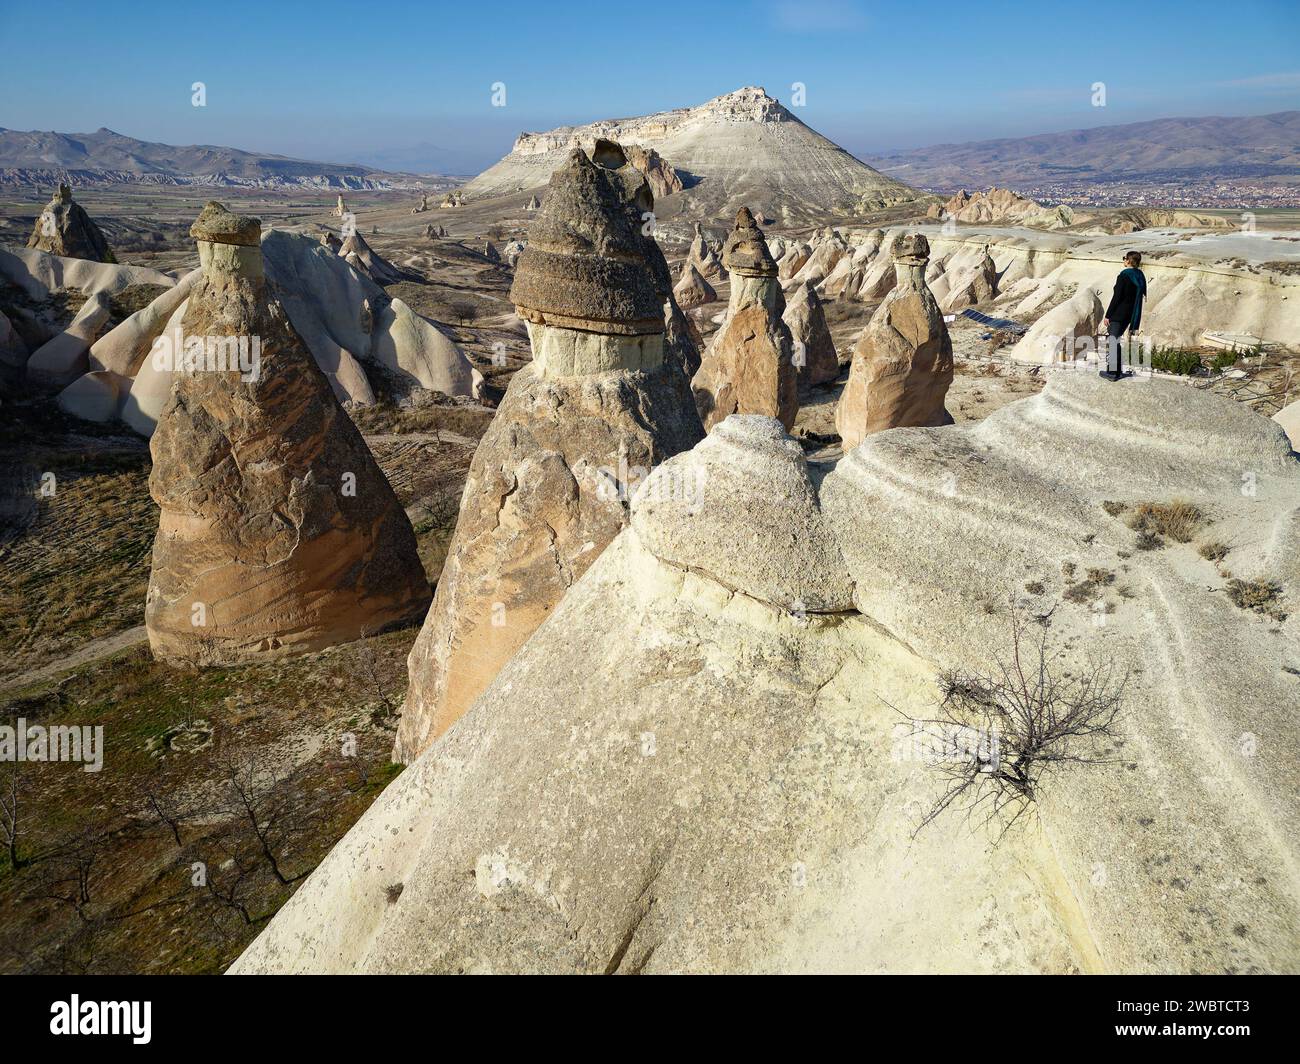 Vista aerea con droni di una persona che ammira la bellezza naturale della Valle di Pasabag o della Valle dei Monaci e dei camini delle fate in Cappadocia, Turchia. Foto Stock